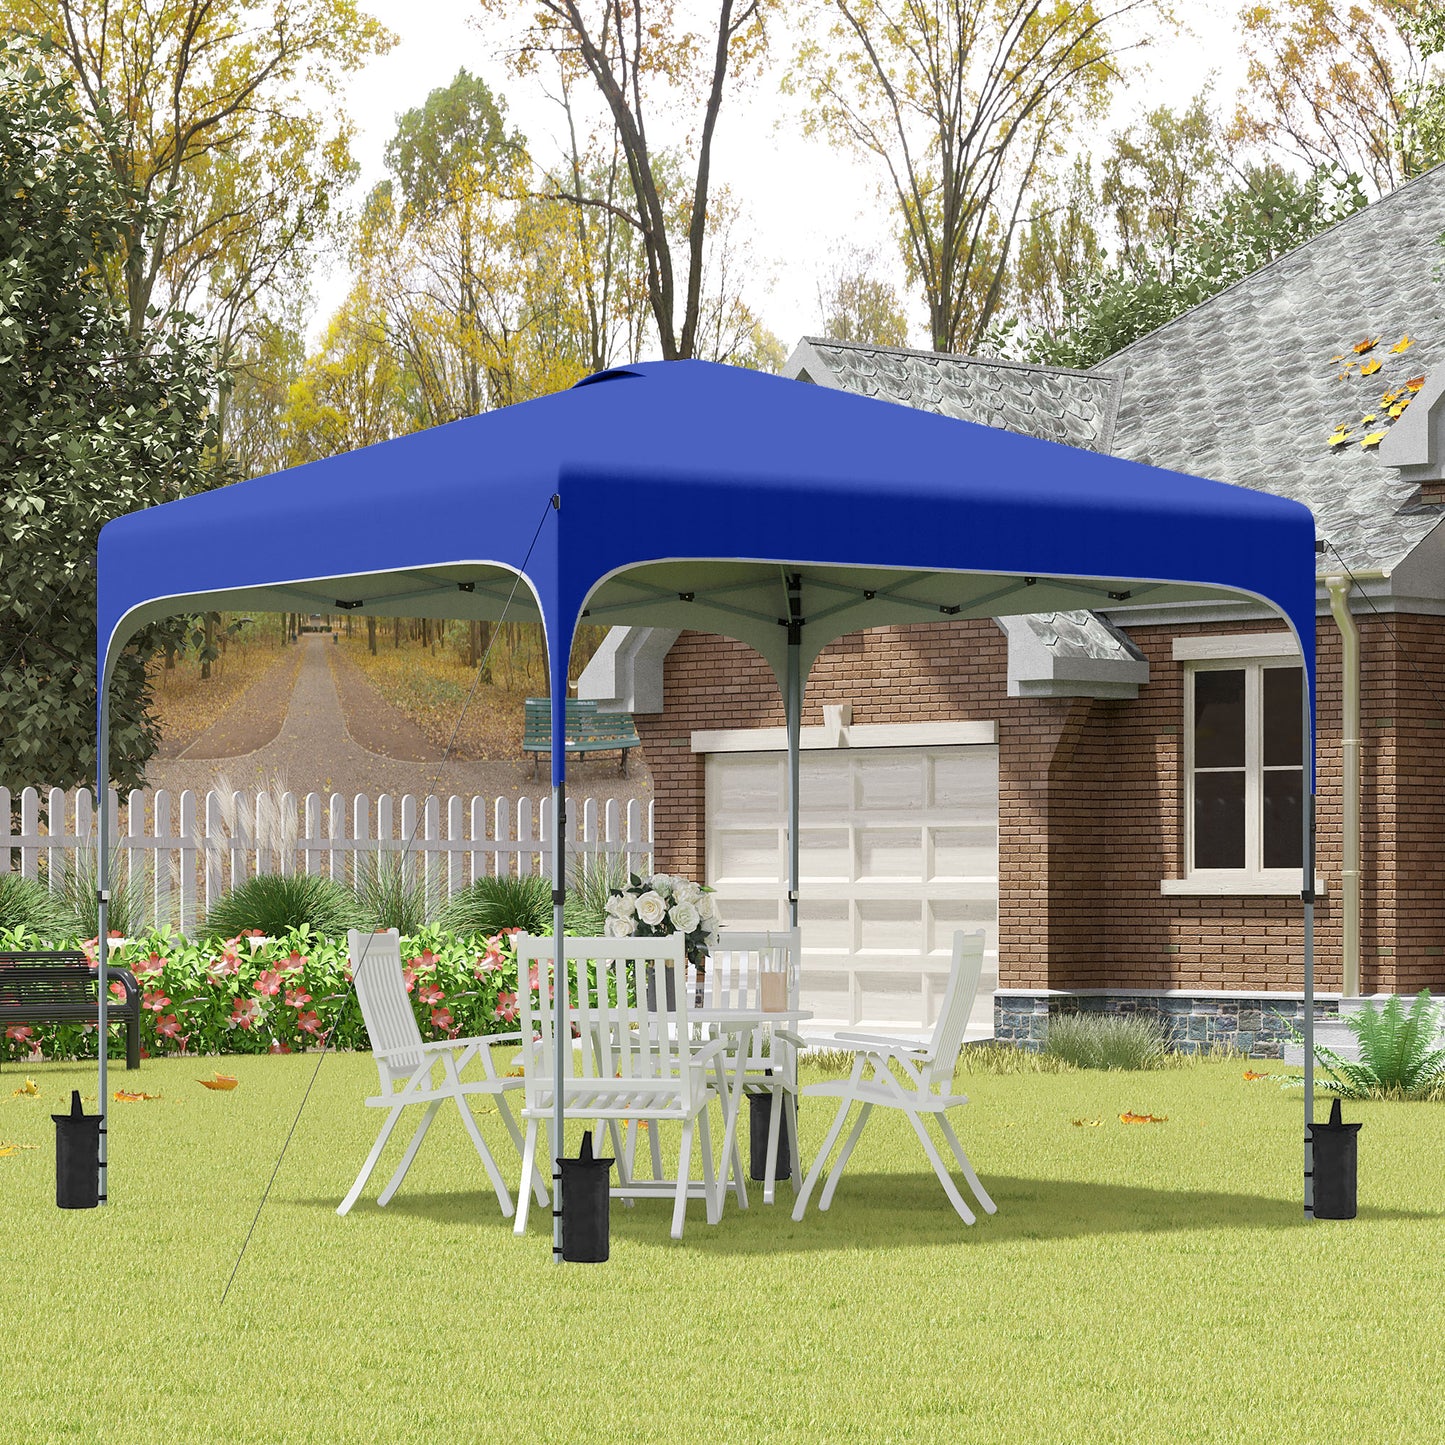 Outsunny Carpa Plegable 2,5x2,5x2,7 m Cenador de Jardín Emergente con Altura Ajustable Protección UV50+ Impermeable 4 Bolsas de Arena y Bolsa de Transporte Gazebo para Exterior Camping Fiestas Azul